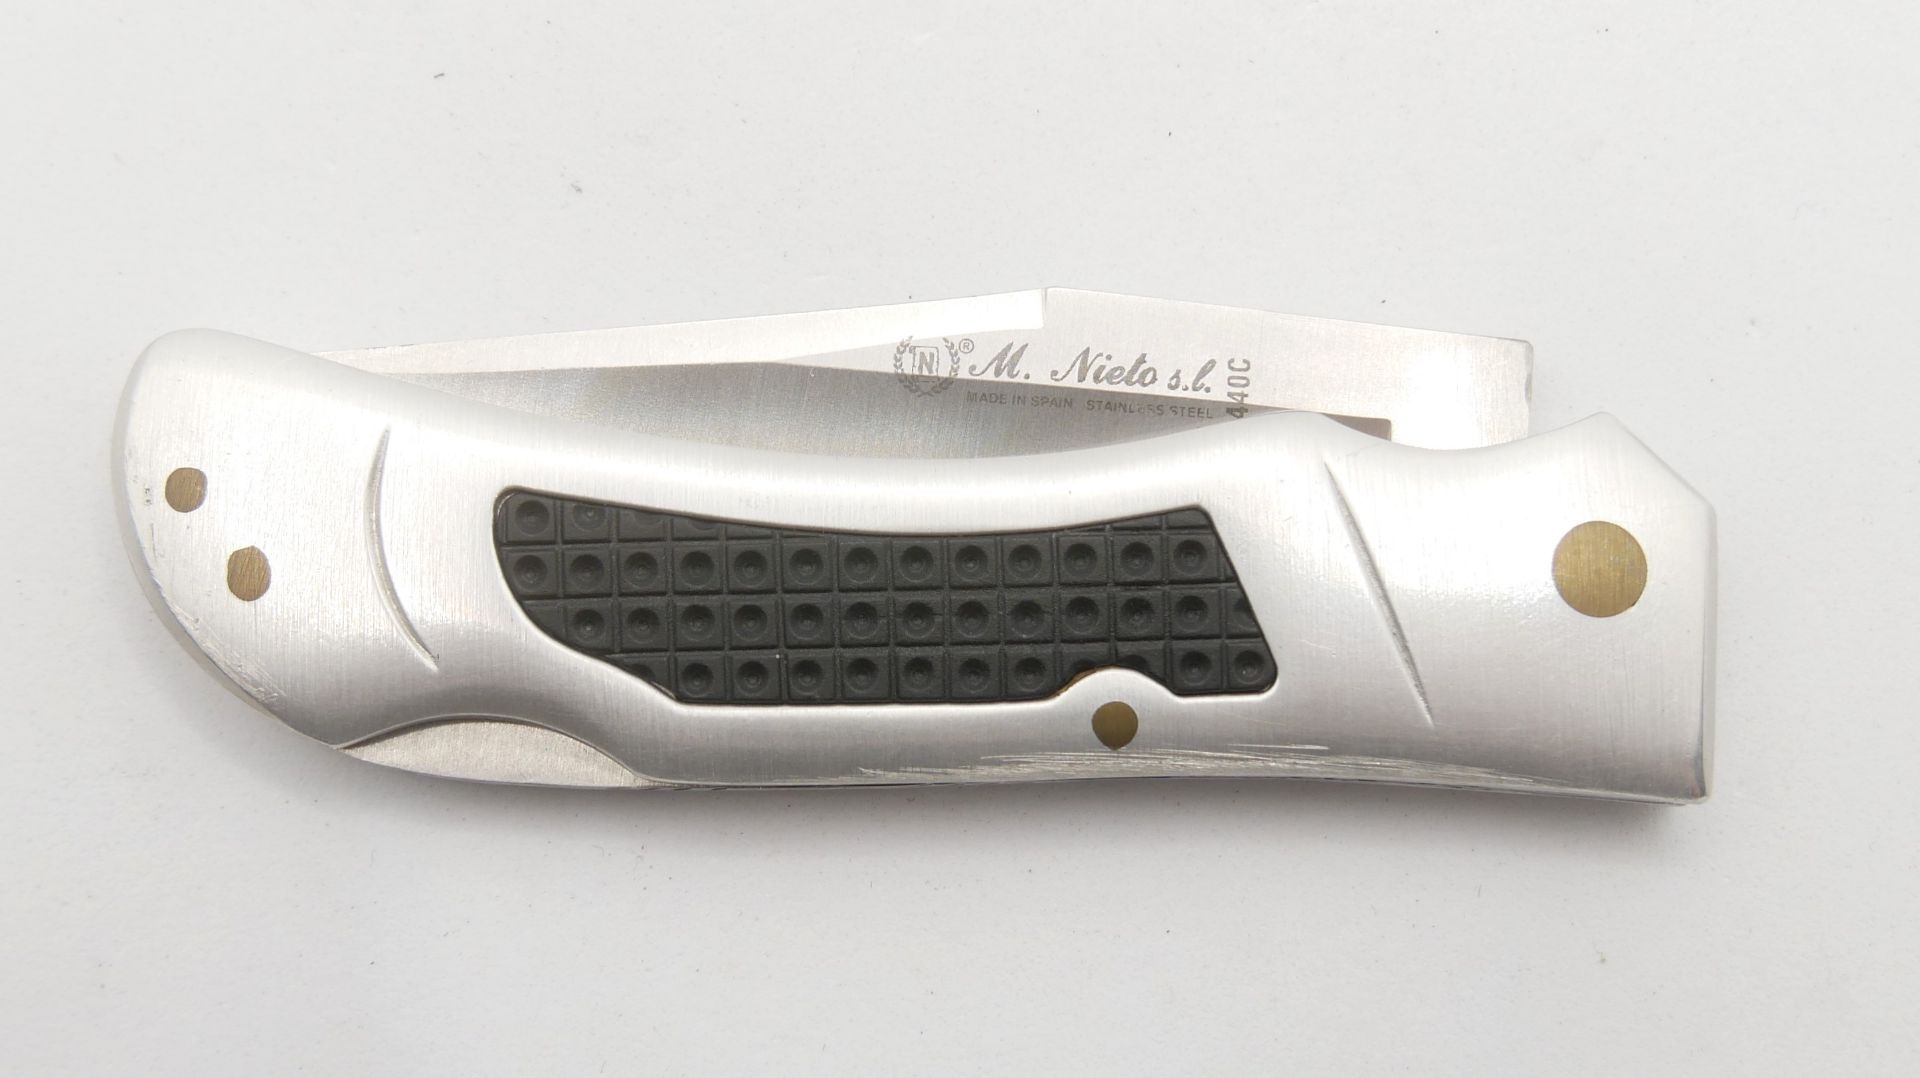 Outdoor Taschenmesser M.Nieto 440 C. Top Messer, sehr guter Zustand - Bild 2 aus 2